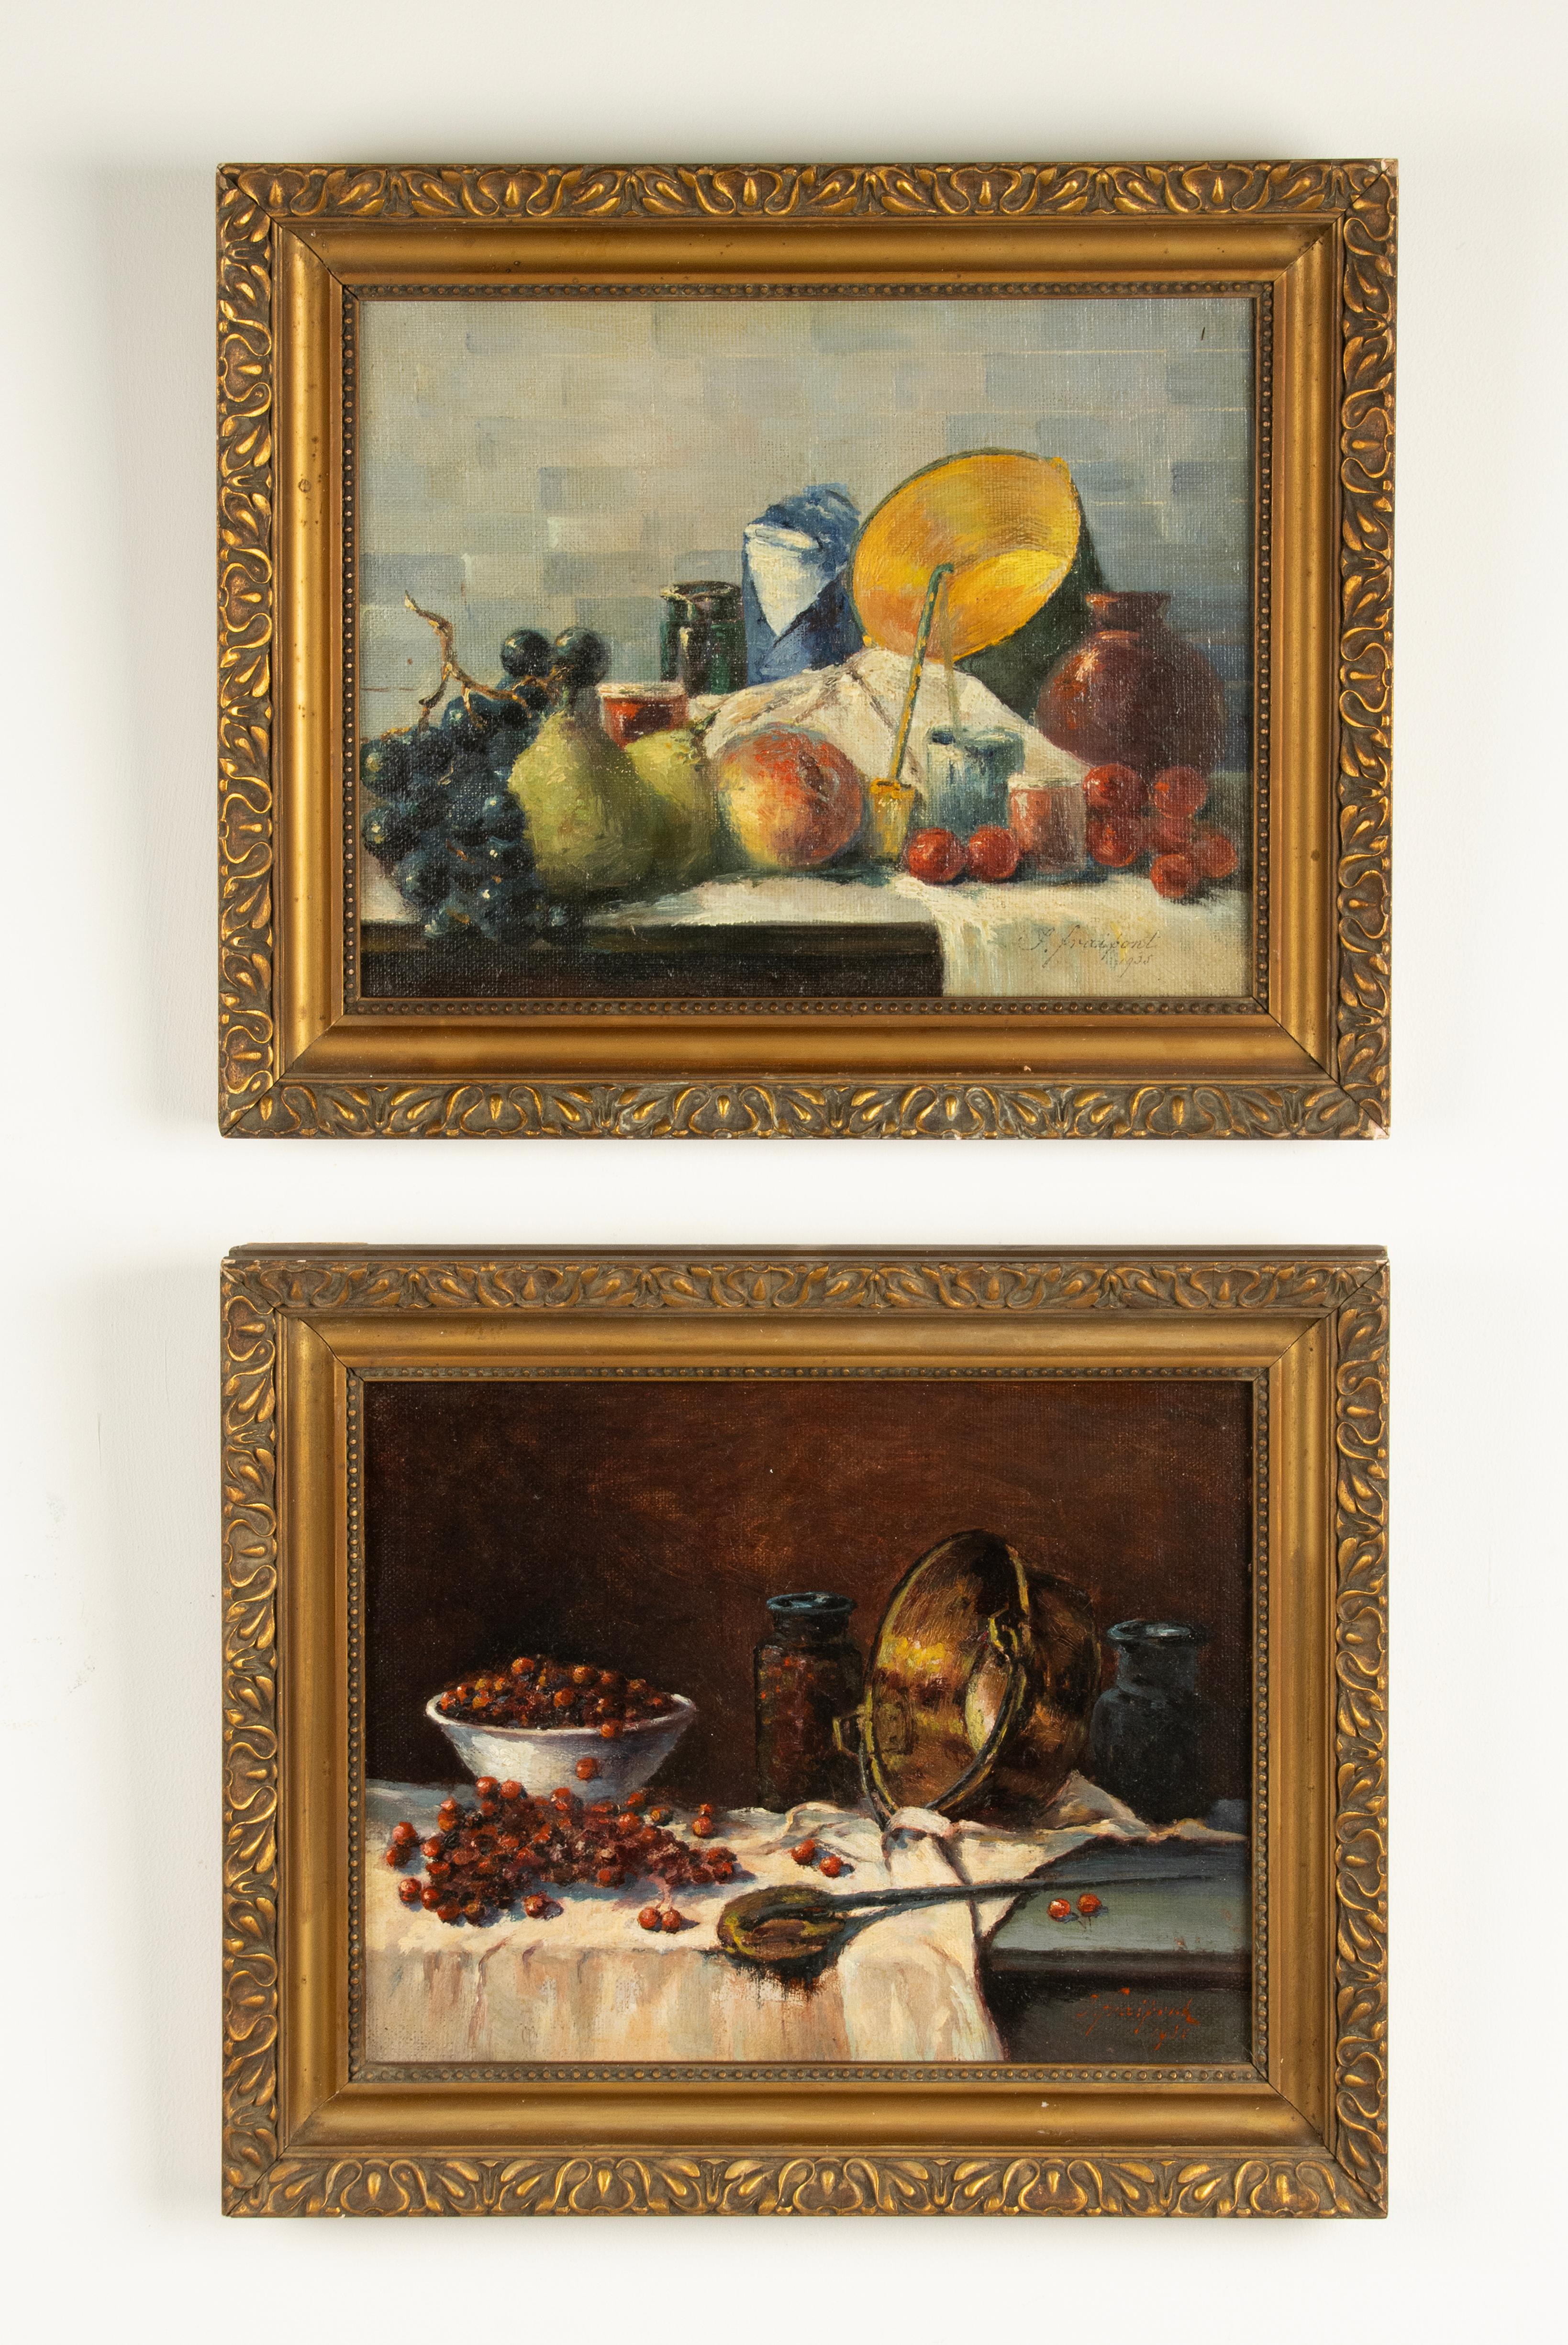 Ein schönes Paar Gemälde von Obststilleben, Ölfarbe auf Leinwand.
Die Gemälde stammen von der belgischen Künstlerin Janine Fraipont.
Die Gemälde sind auf das Jahr 1935 datiert.
Beide Gemälde haben eine schöne Farbpalette. Sie sind in originalen